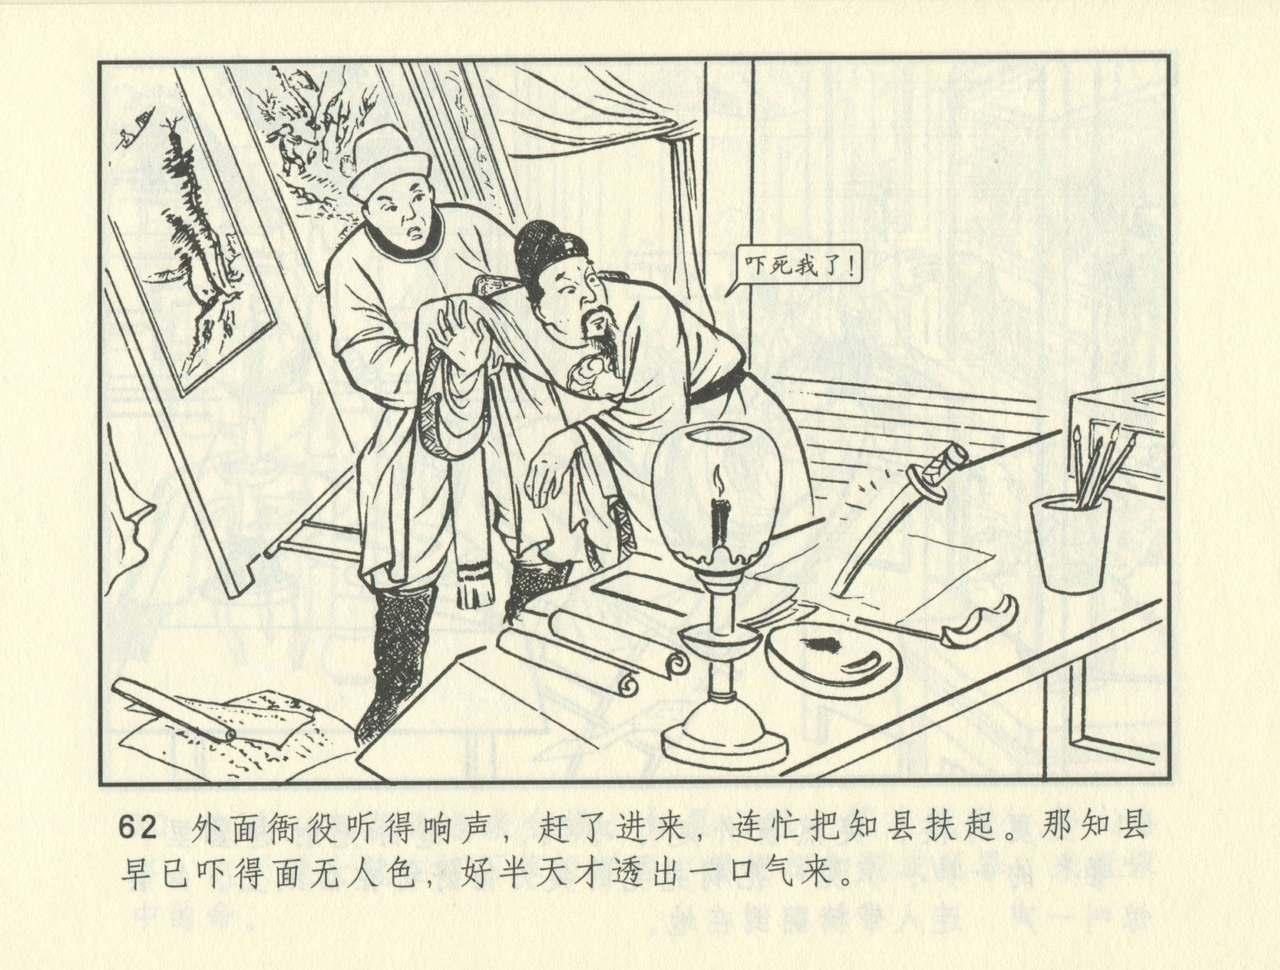 聊斋志异 张玮等绘 天津人民美术出版社 卷二十一 ~ 三十 402